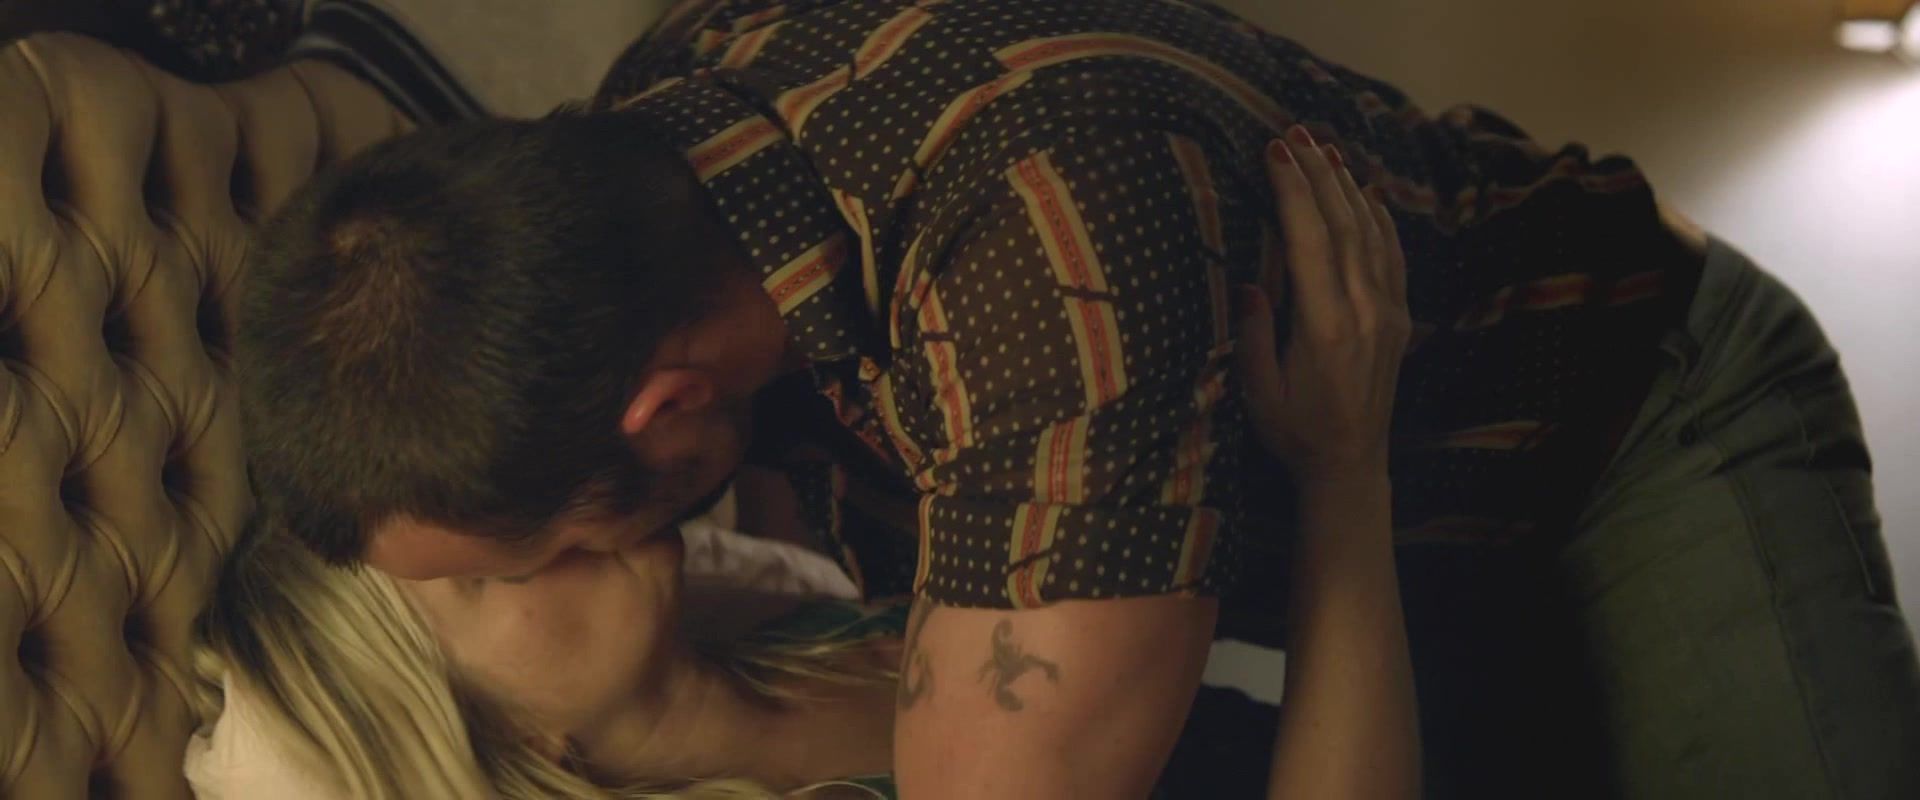 Roleplay Sex scene Jessica de Gouw, Catherine Larcey nude - Cut Snake (2014) Amateur Sex